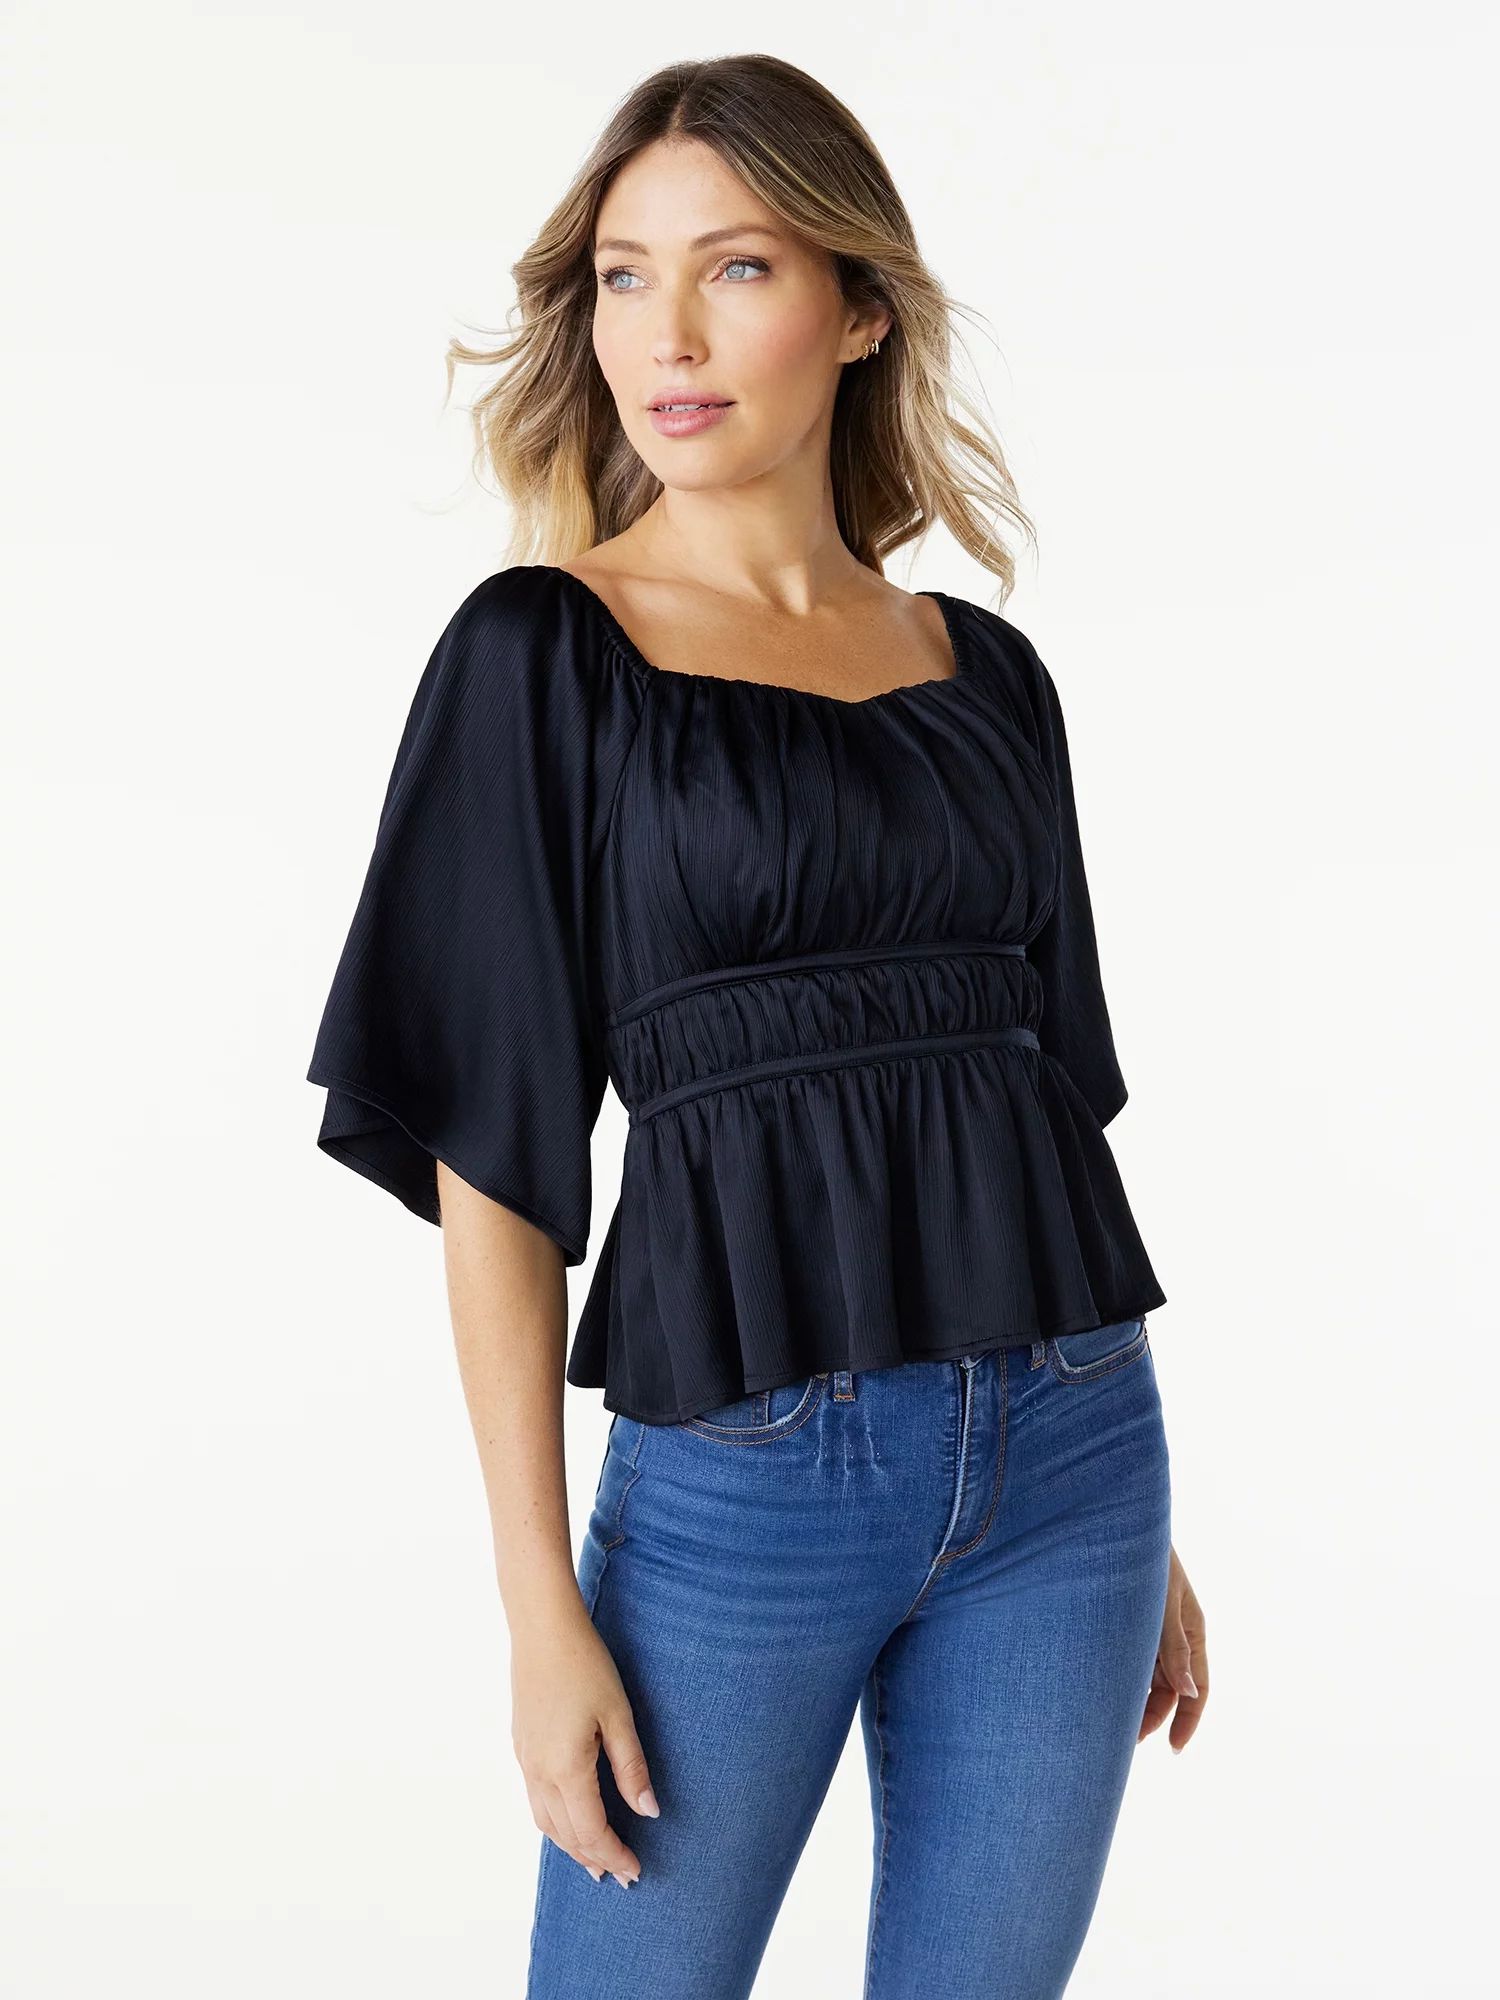 Sofia Jeans Women's Off the Shoulder Top, Sizes XS-3XL | Walmart (US)